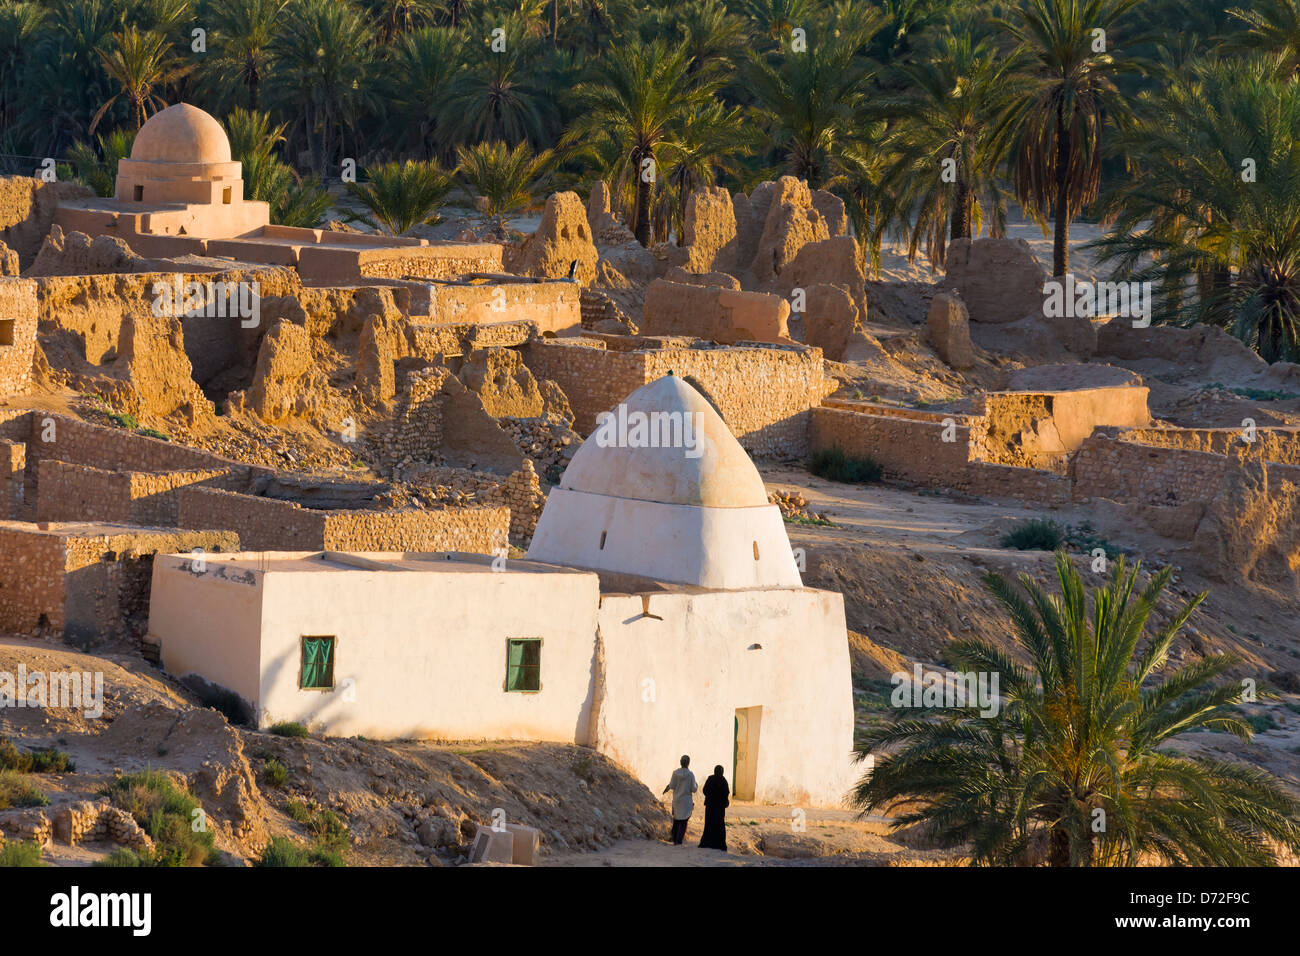 Tamerza ruins, Tunisia Stock Photo